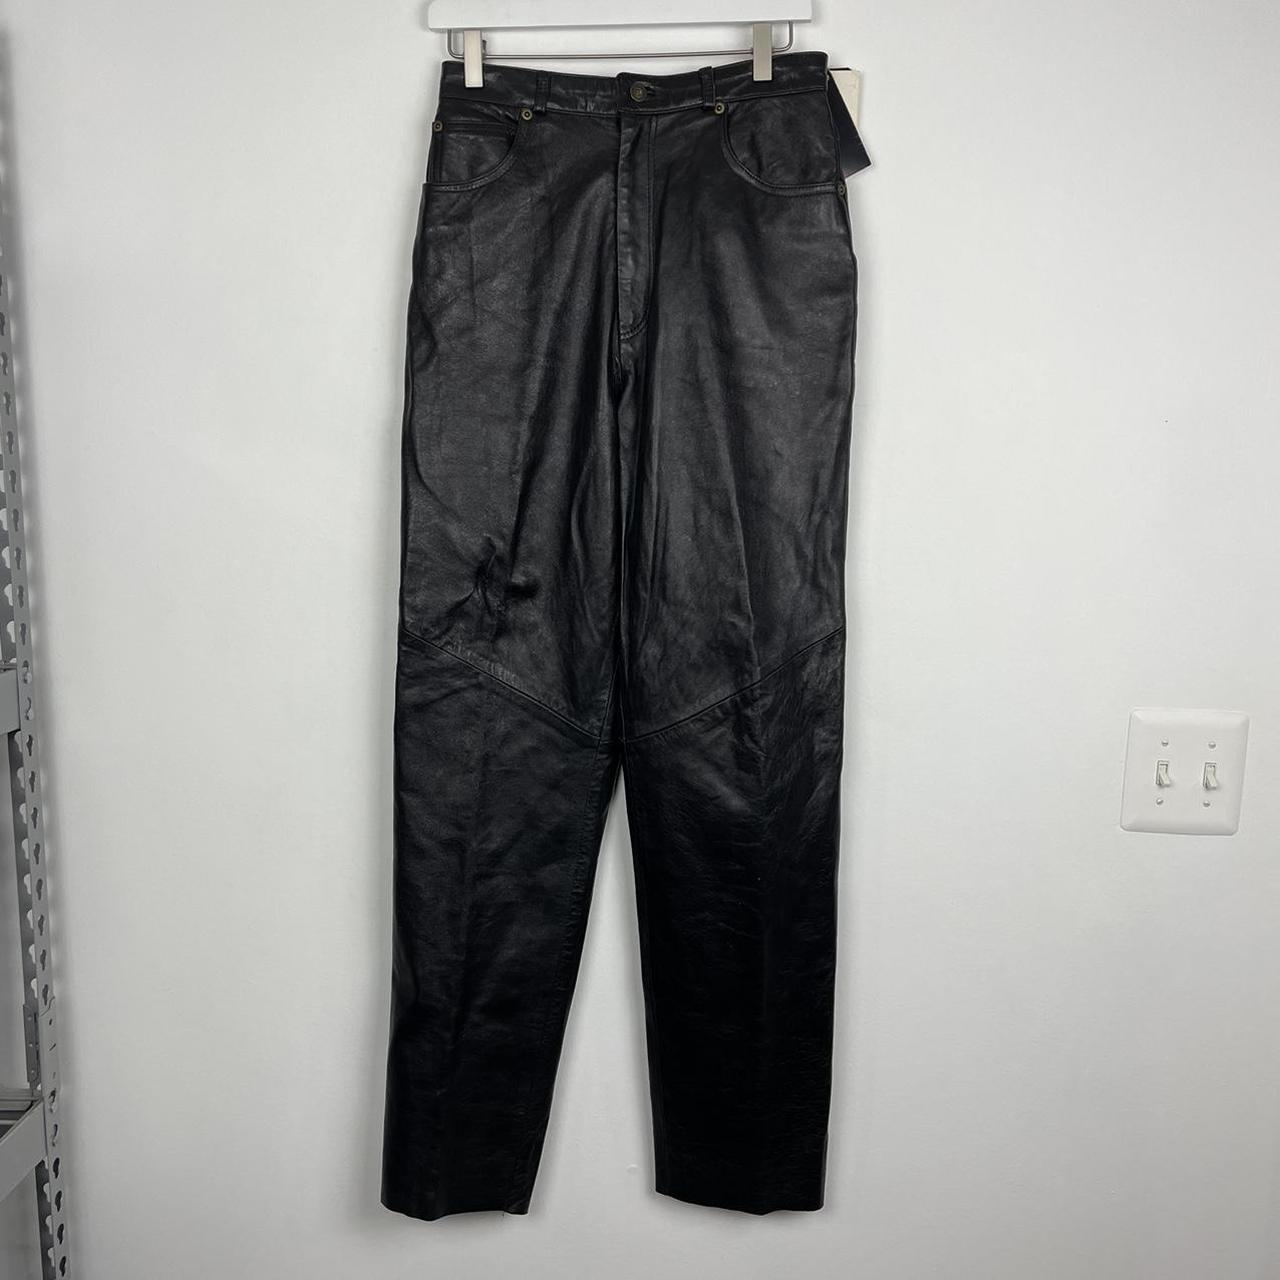 Vintage Christian Dior Black Leather Pants Size 10... - Depop